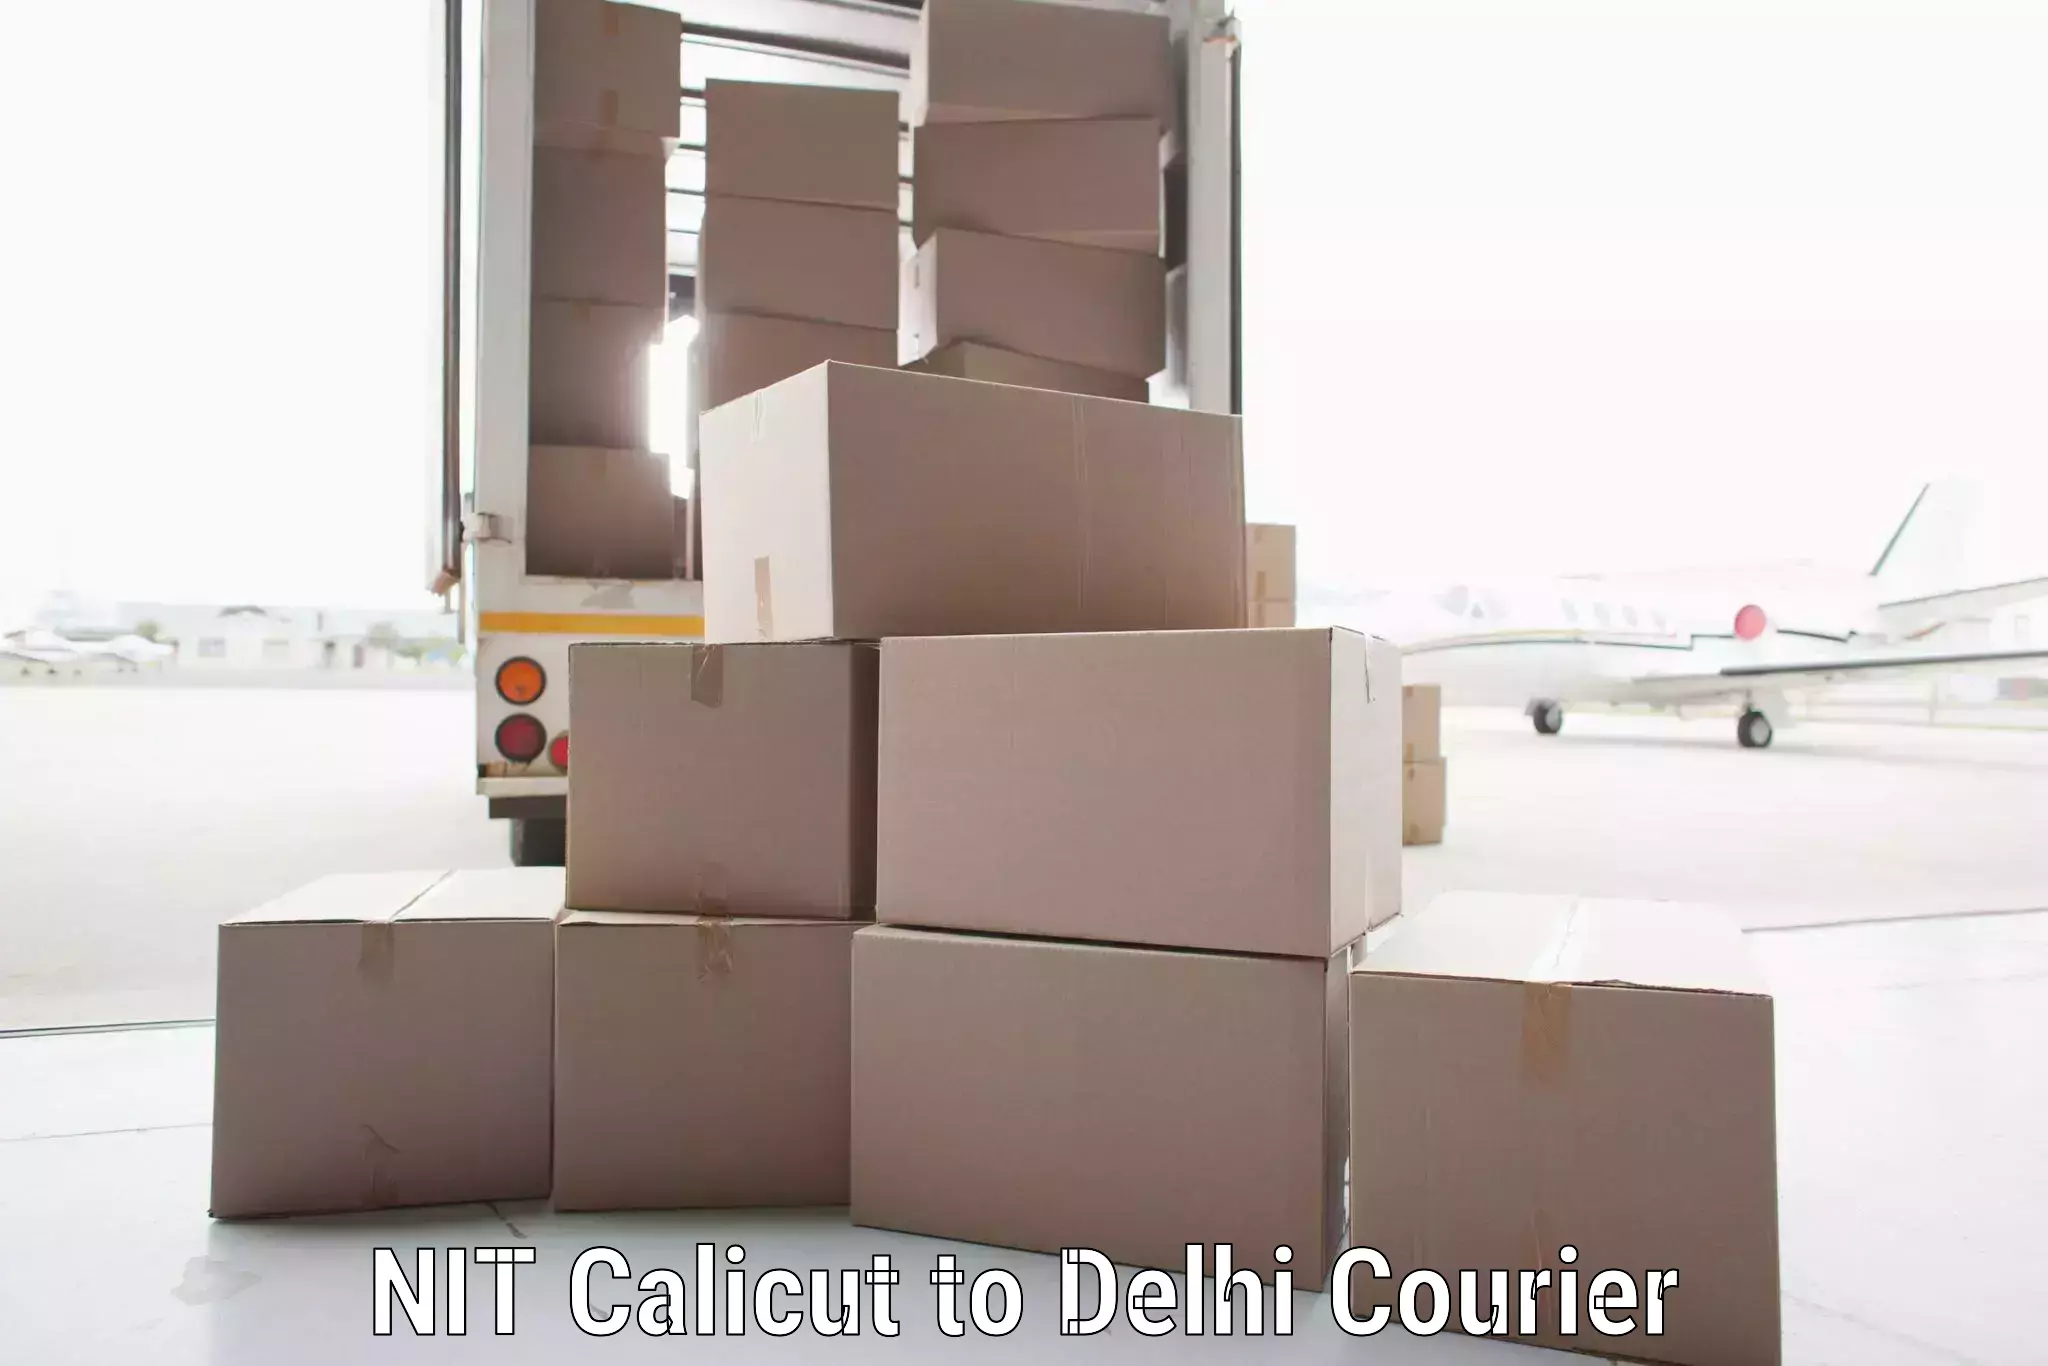 Express postal services NIT Calicut to Delhi